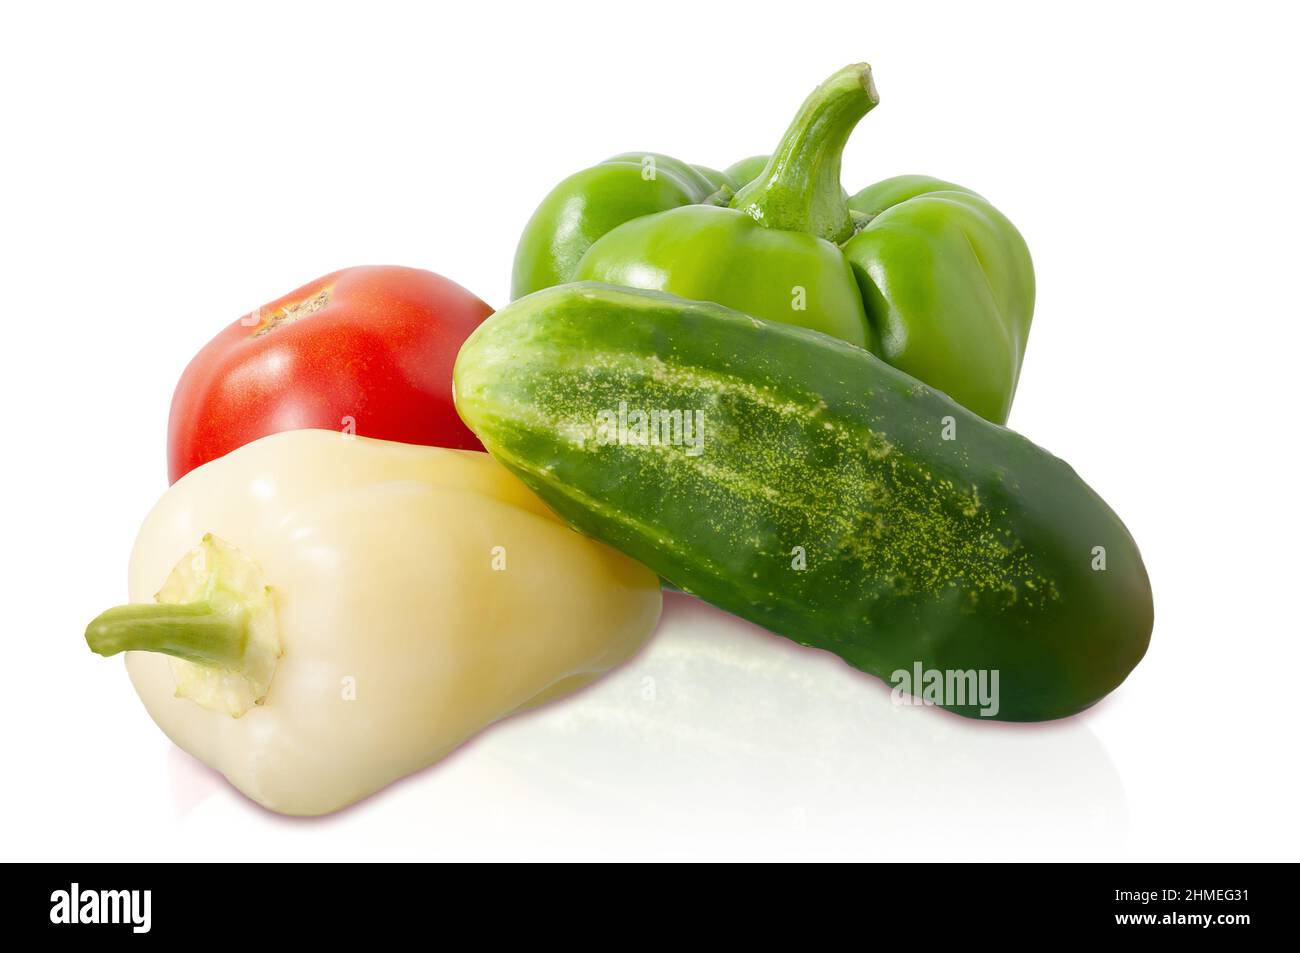 peperoni dolci gialli e verdi, pomodori e cetrioli isolati su sfondo bianco Foto Stock